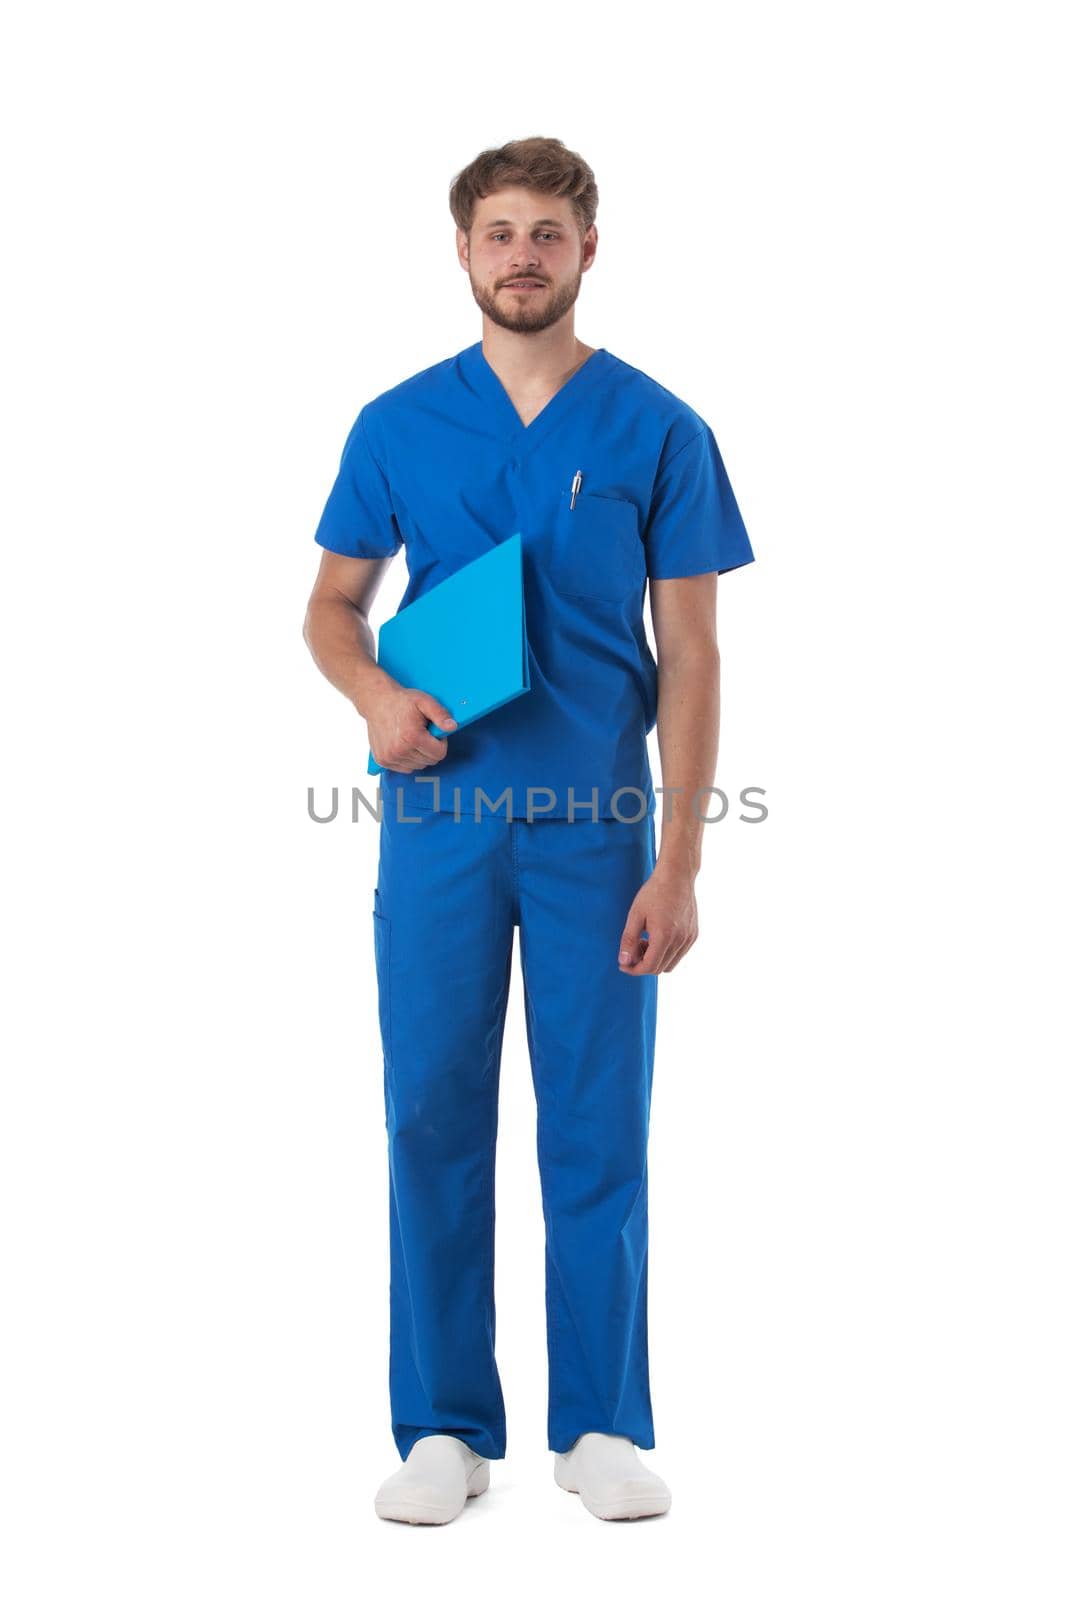 Male nurse holding file folder isolated on white background